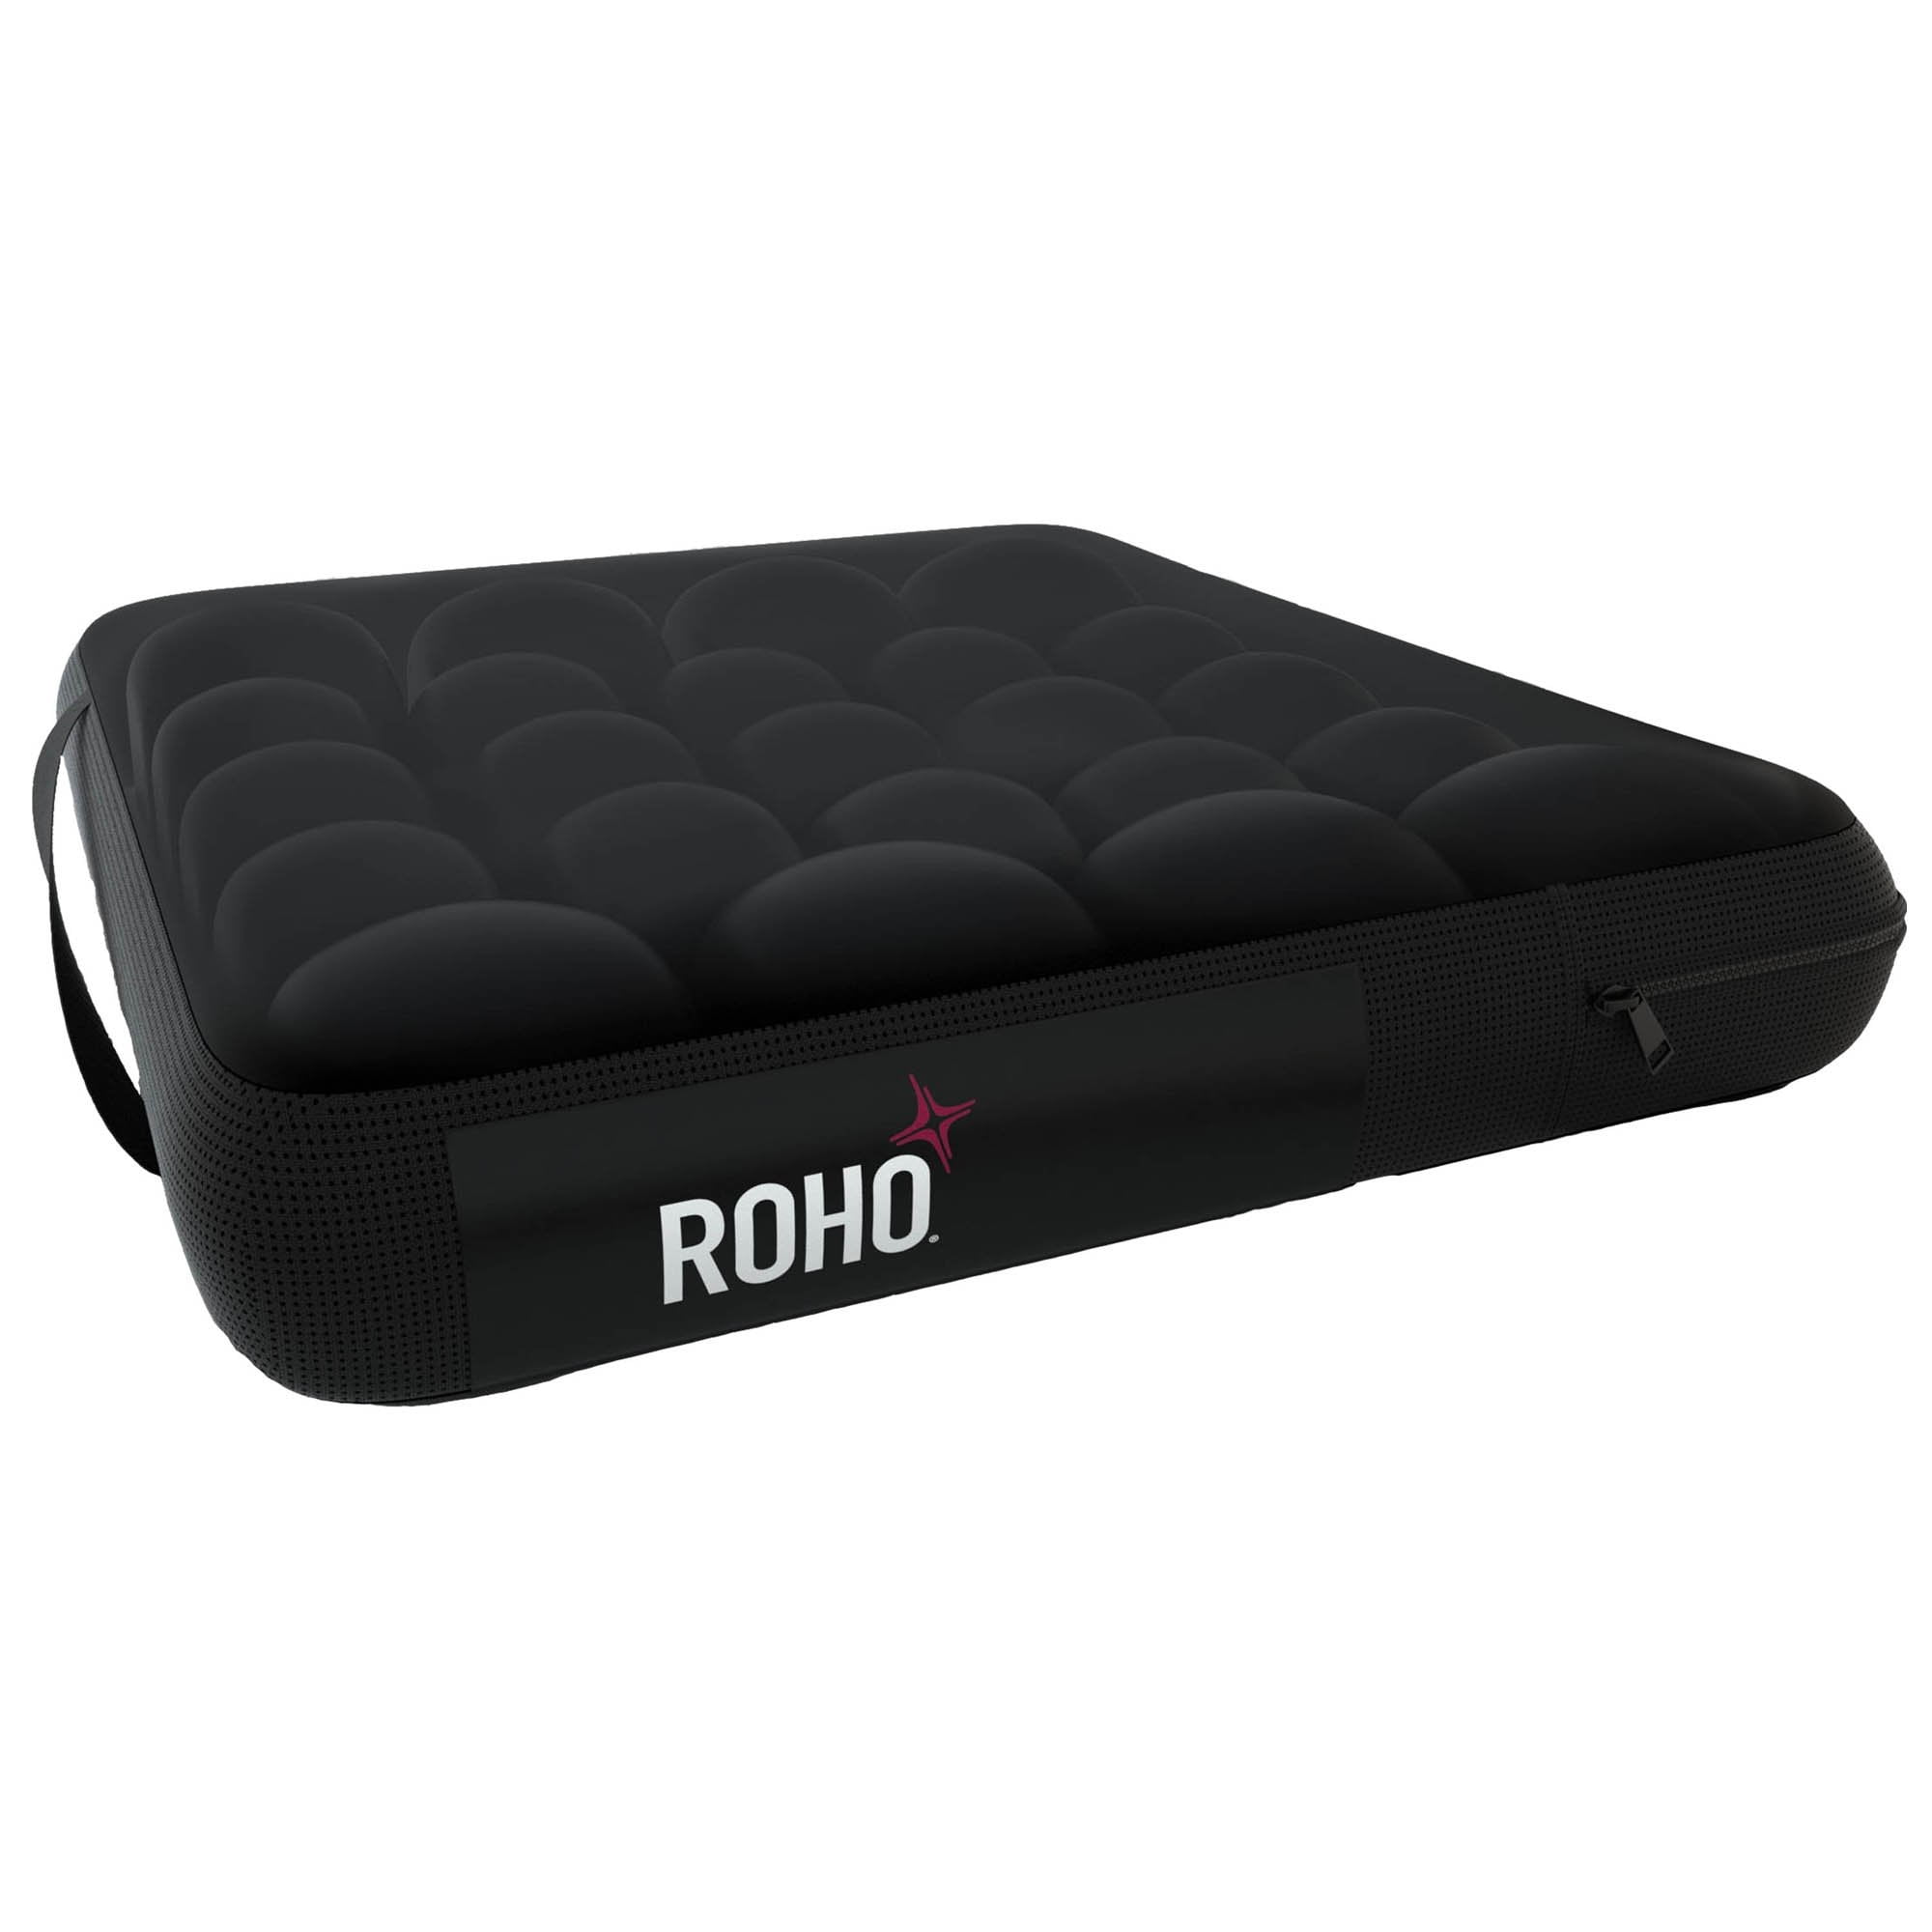 ROHO MOSAIC Seat Cushion ROHO Mosaic 18 W X 16 D Inch Air Cells